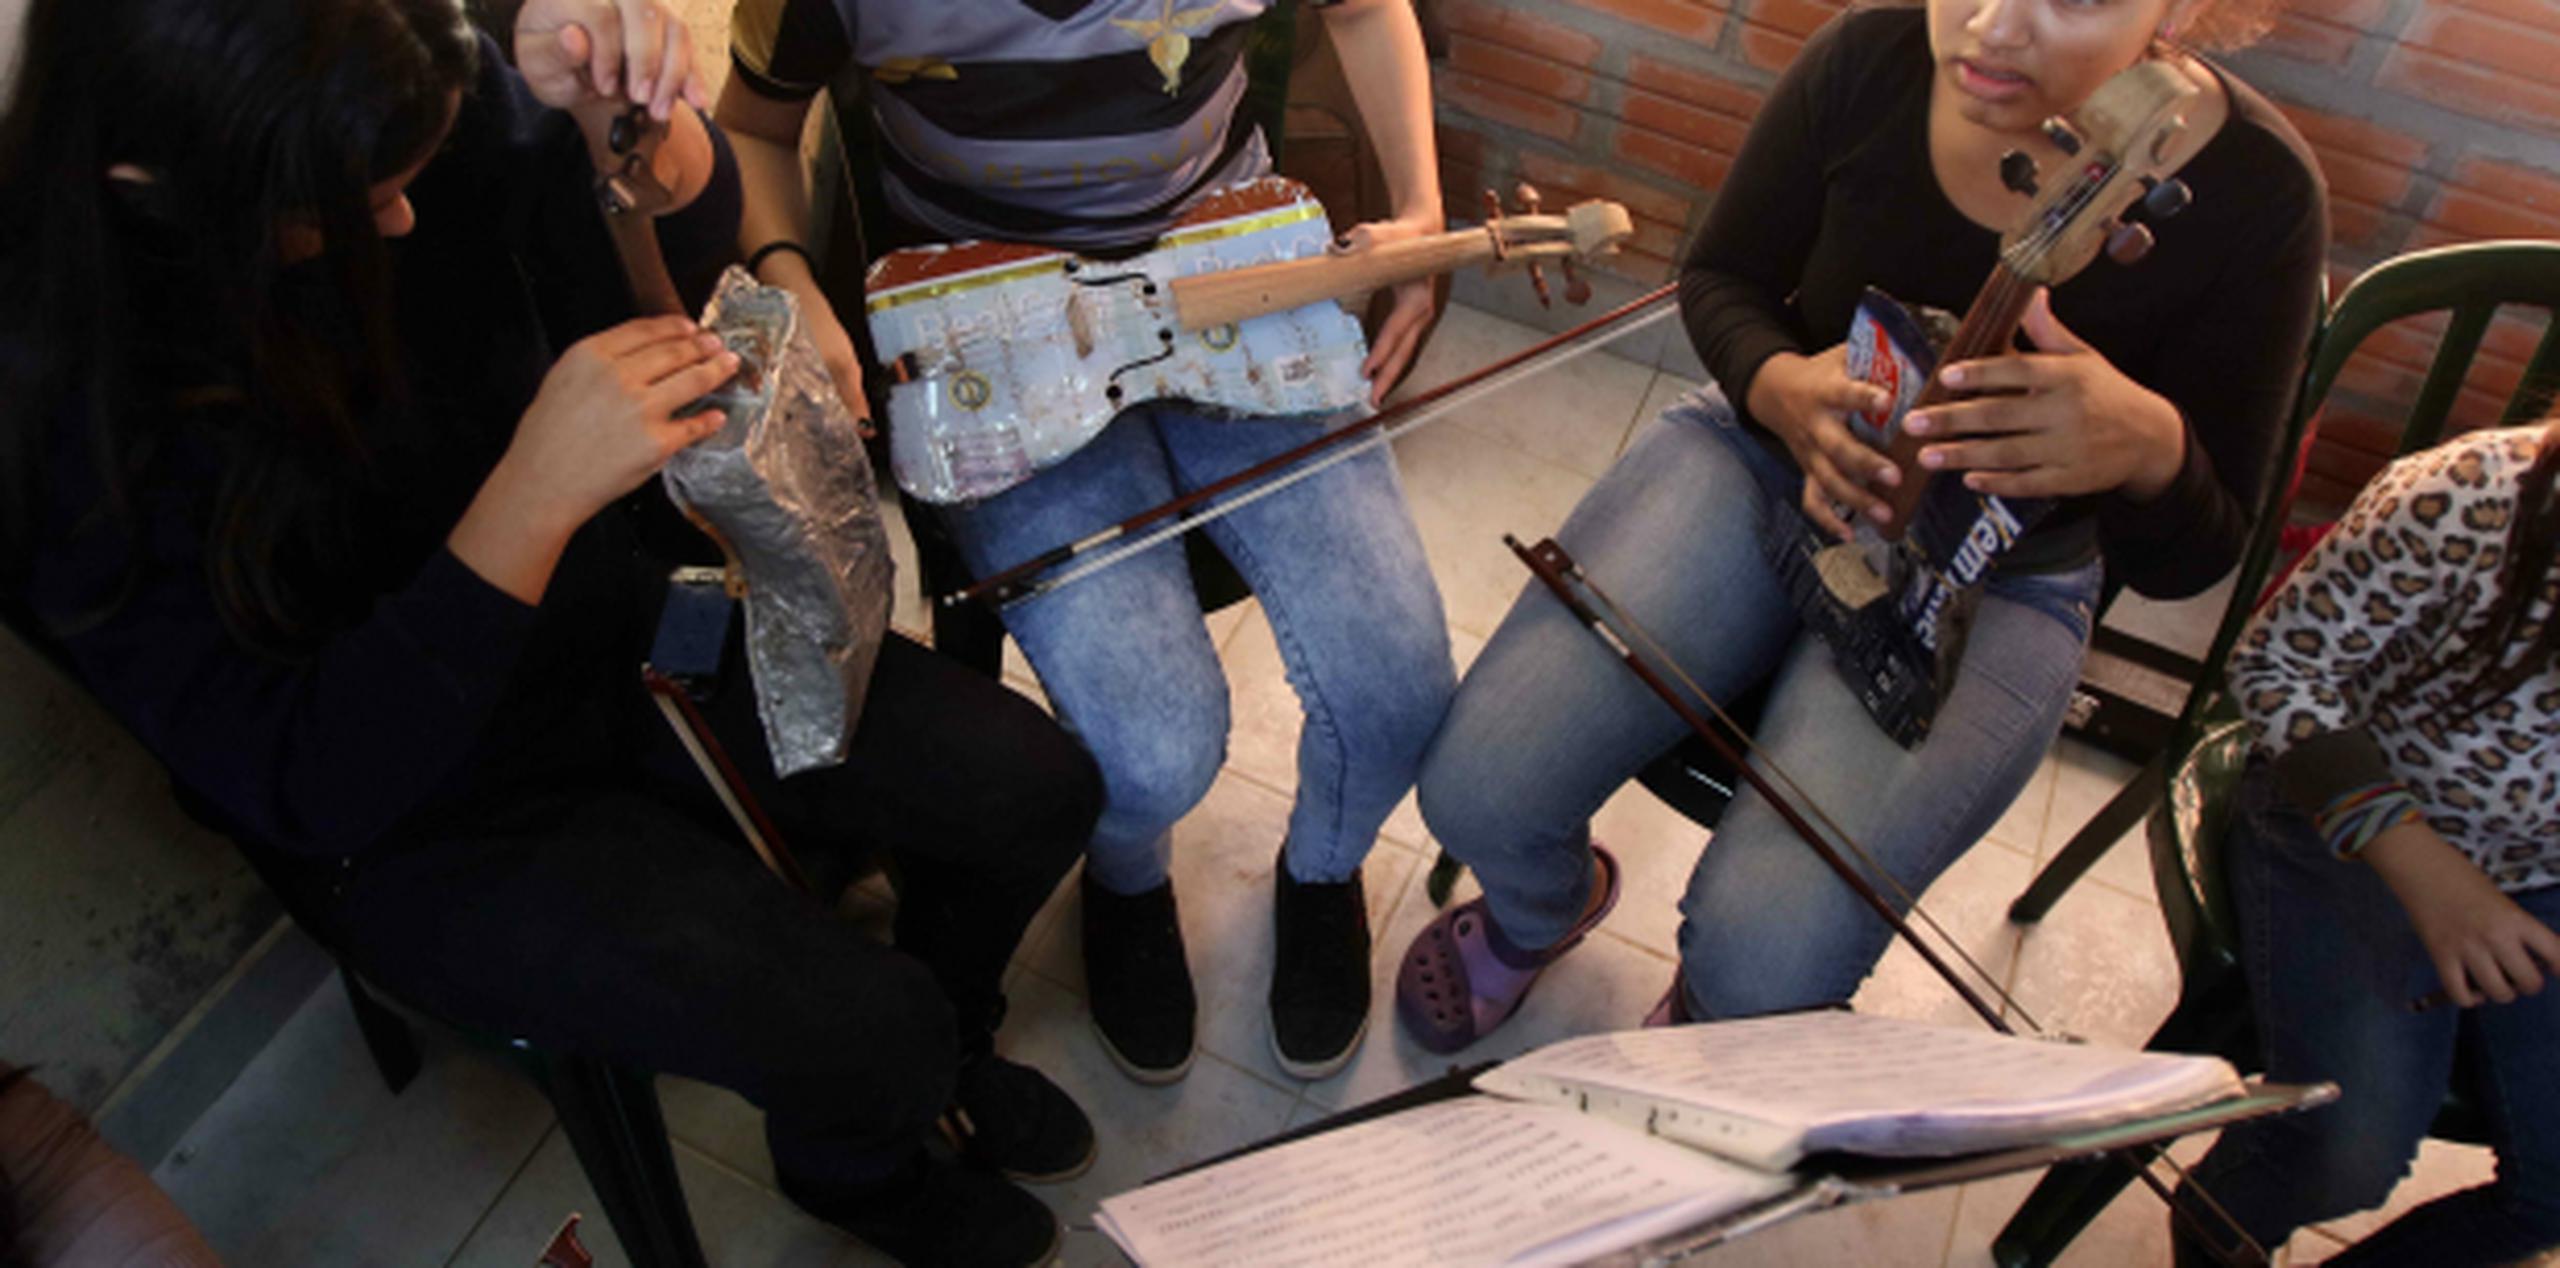 Jóvenes de Paraguay se preparan para ensayar en una una orquesta. Un total de 421 niños y adolescentes fueron víctimas de abusos sexuales en Paraguay entre enero y junio de 2015, según las autoridades. (EFE)